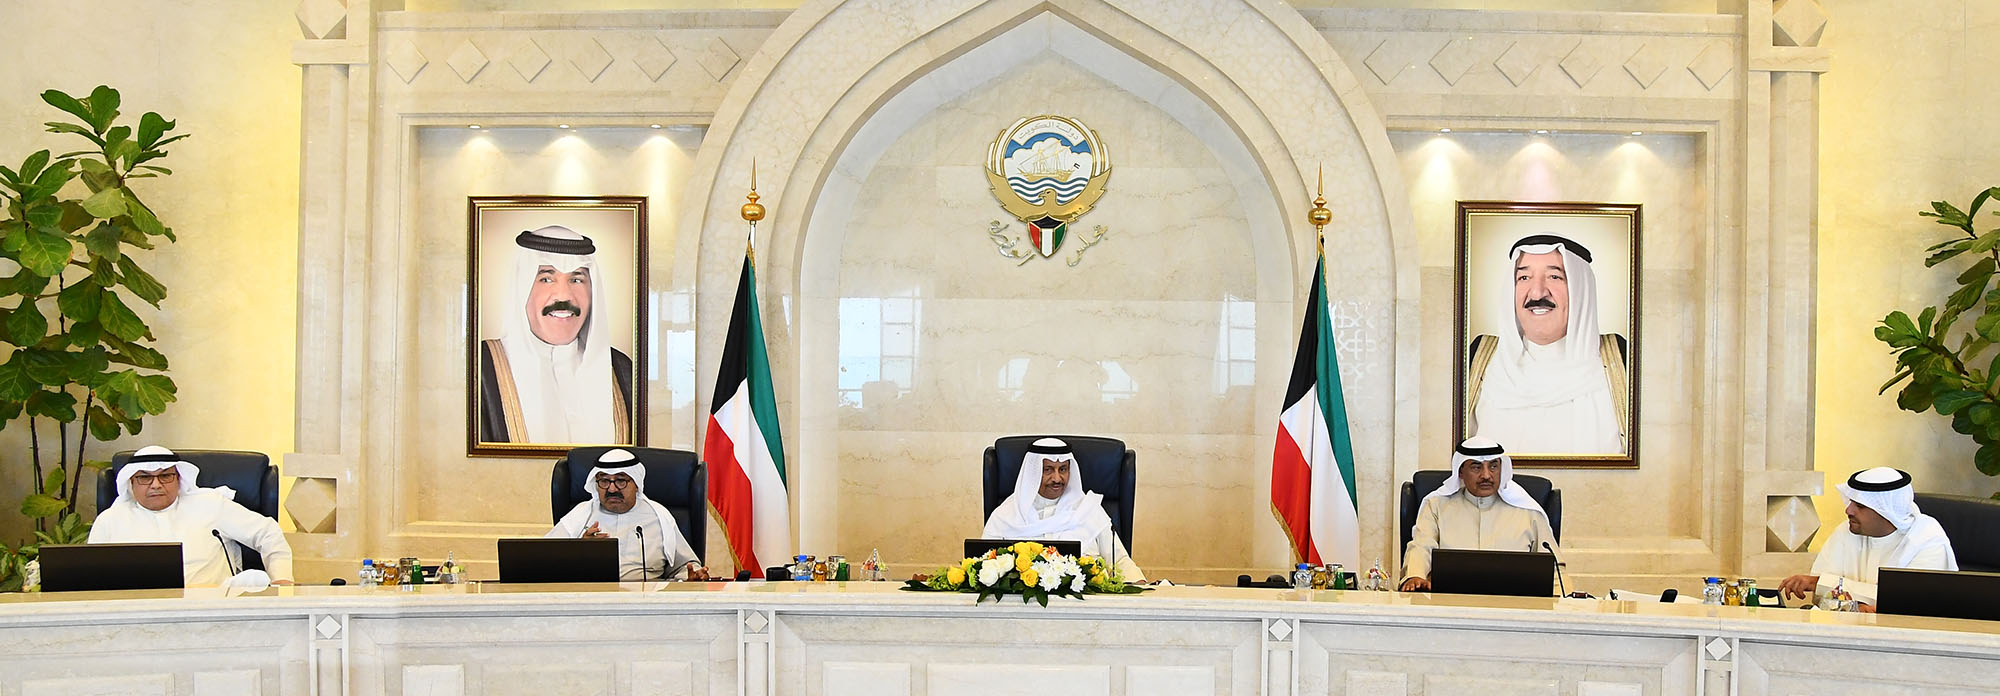 رئيس مجلس الوزراء الكويتي يتقدم باستقالة الحكومة إلى أمير البلاد